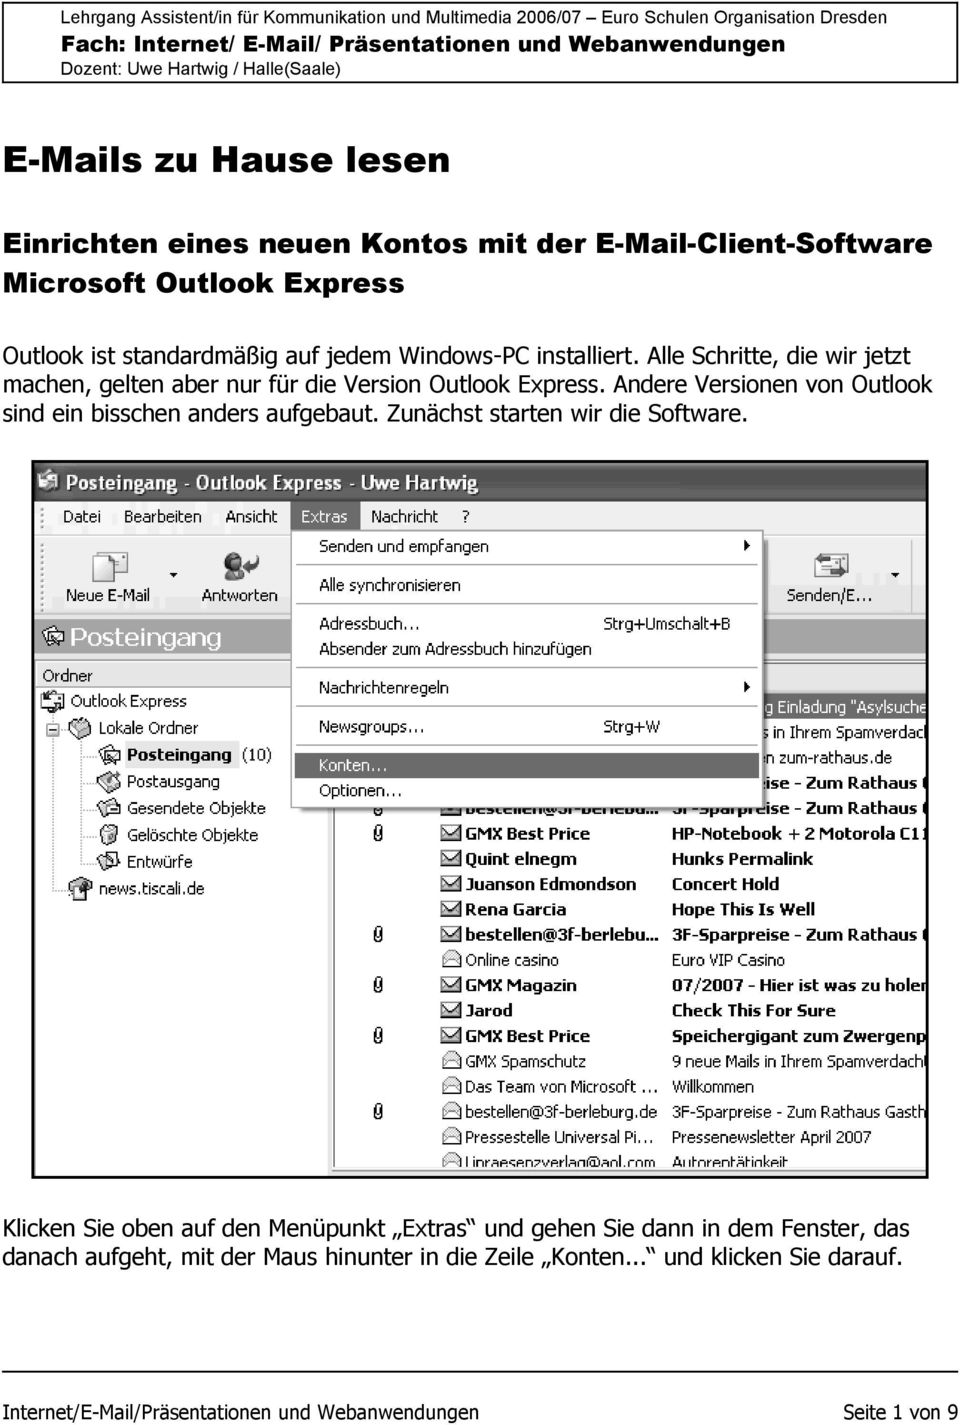 Andere Versionen von Outlook sind ein bisschen anders aufgebaut. Zunächst starten wir die Software.